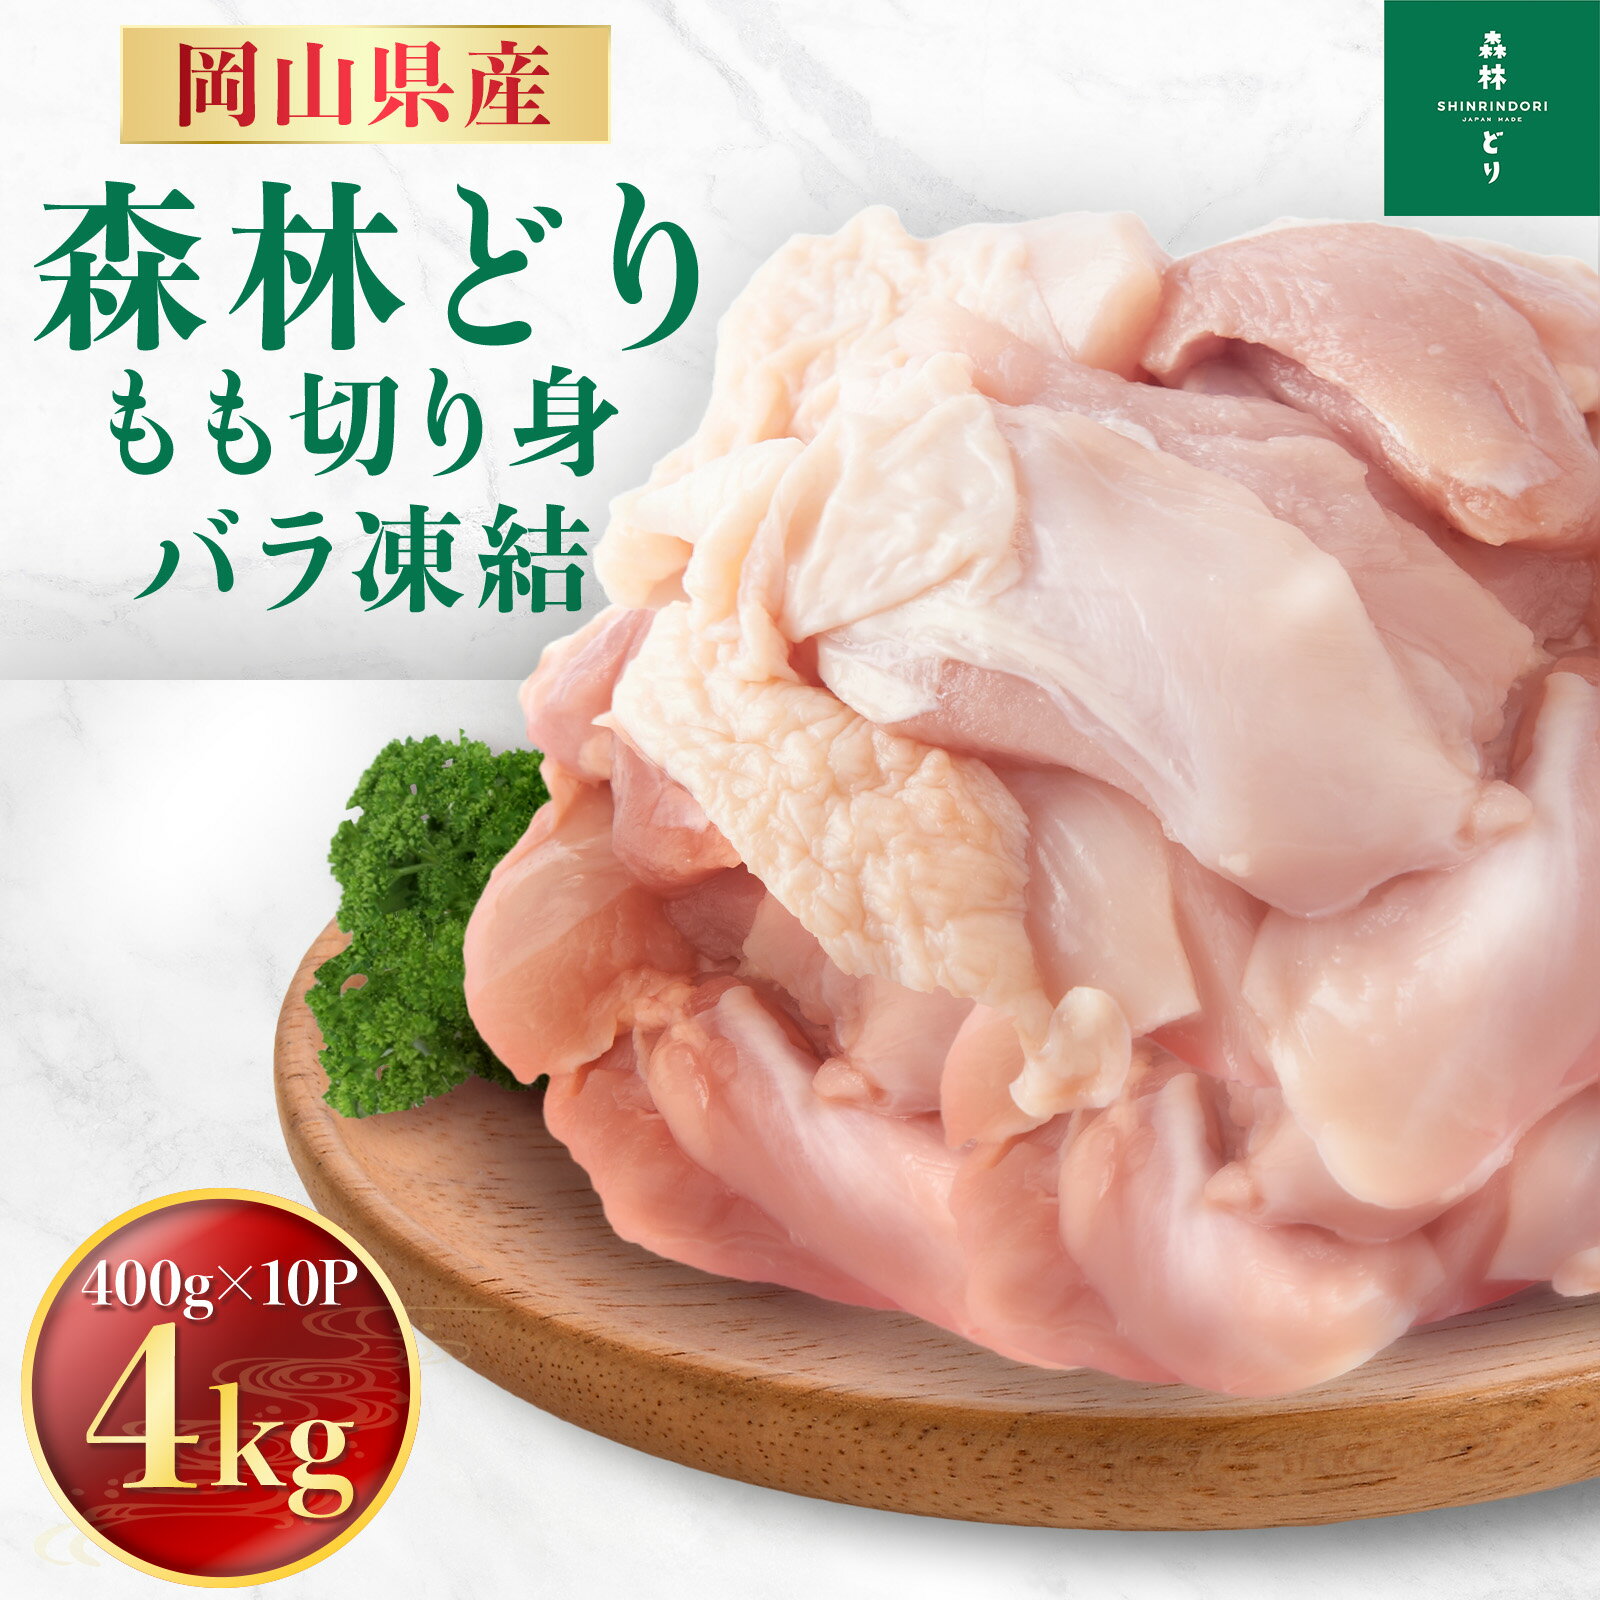 岡山県産 森林どり もも肉 4kg IQF 400g 10P 送料無料 切り身 バラ冷凍 鶏肉 とり肉 鳥肉 森林鶏 鶏もも肉 鶏モモ肉 鳥もも肉 鳥モモ肉 モモ肉 業務用 小分け お得 小分け 森林鶏 国産 国内産 …